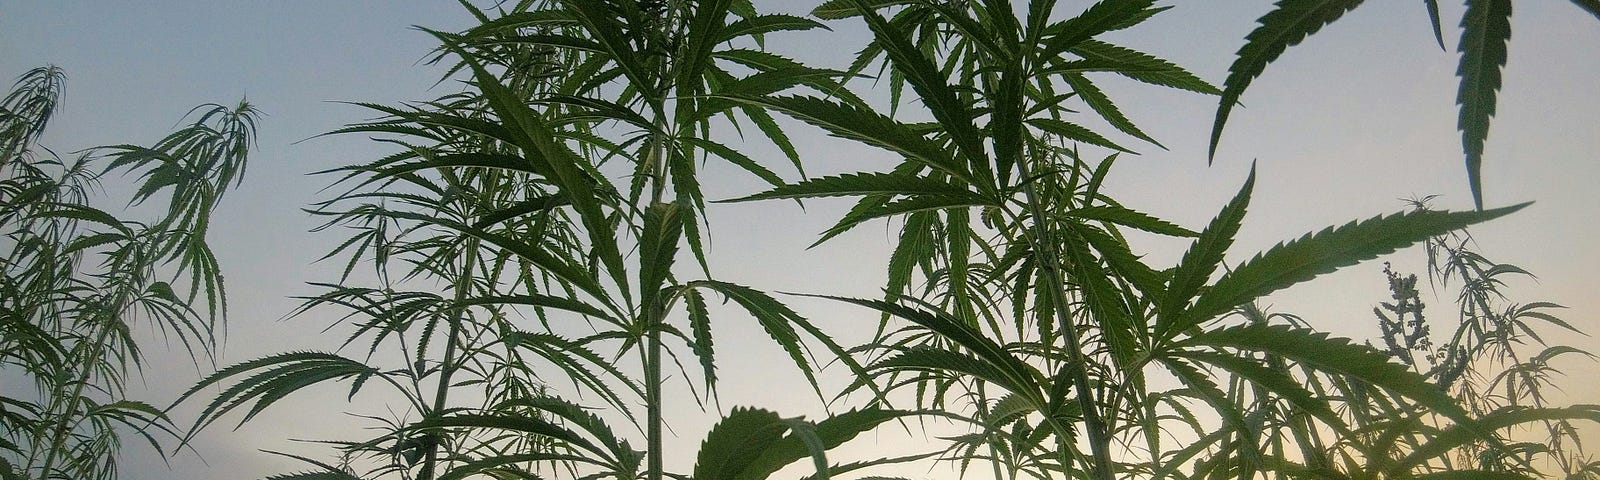 A field of marijuana plants and a blue sky